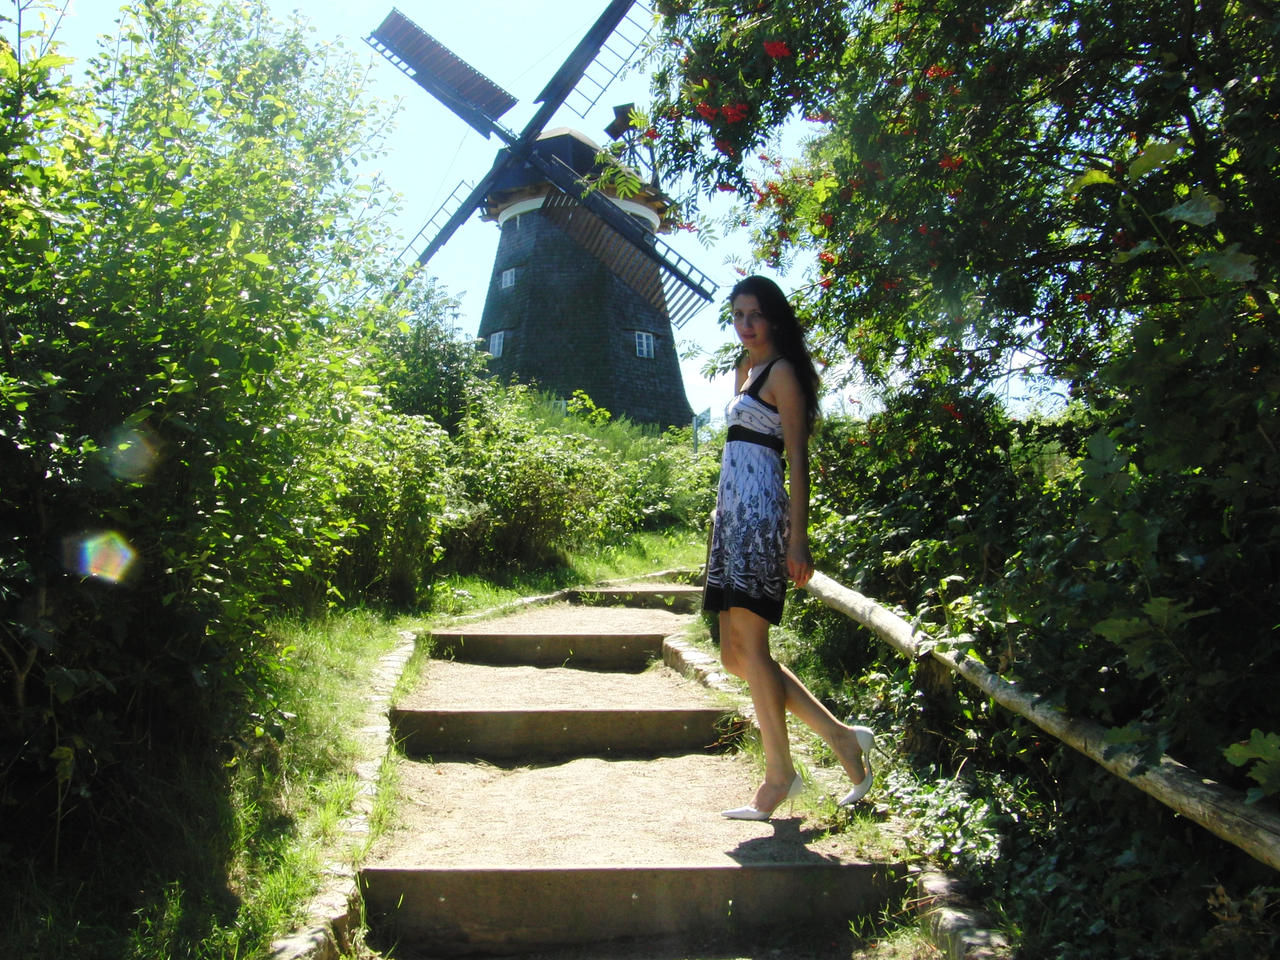 near the windmill